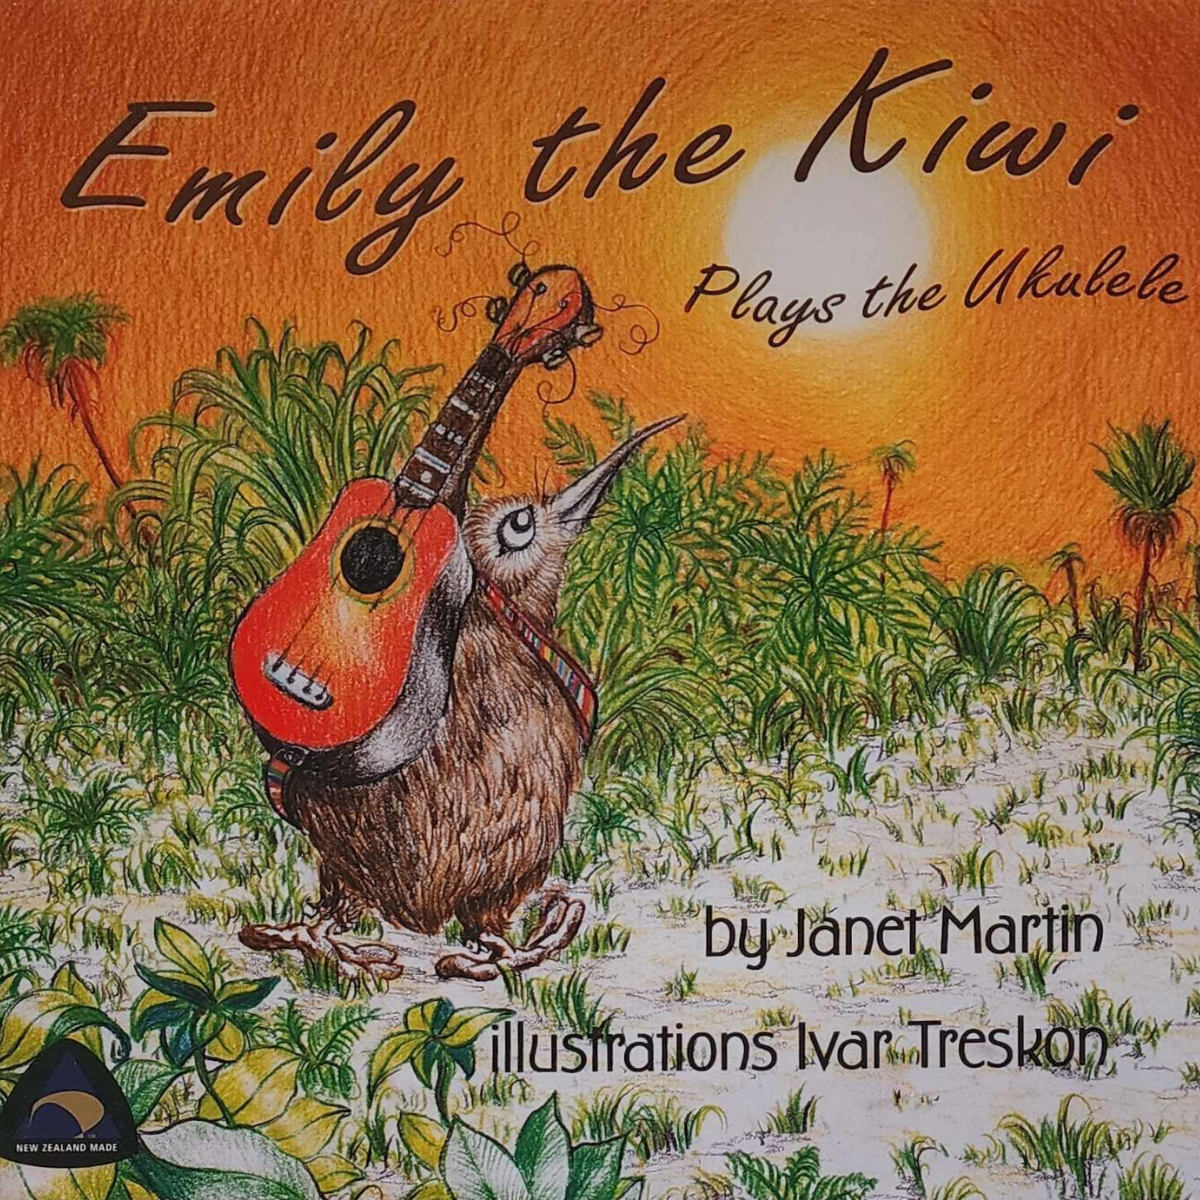 Emily the Kiwi Plays the Ukulele